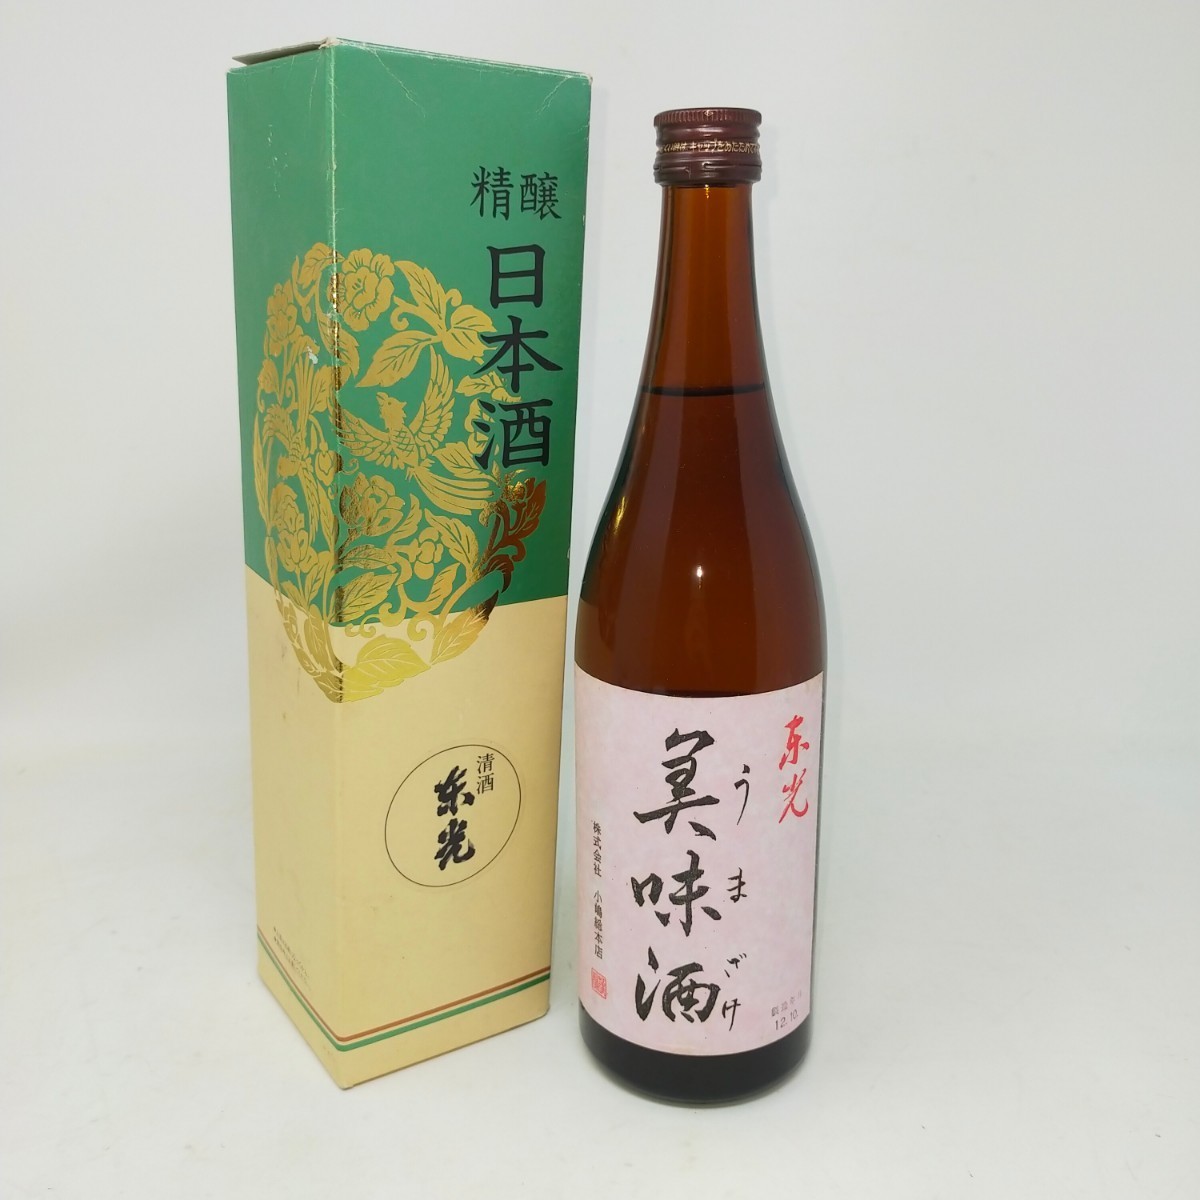 * unopened * Kiyoshi sake higashi light beautiful taste sake special book@. structure small . total head office 720ml 12 year 10 month old sake S